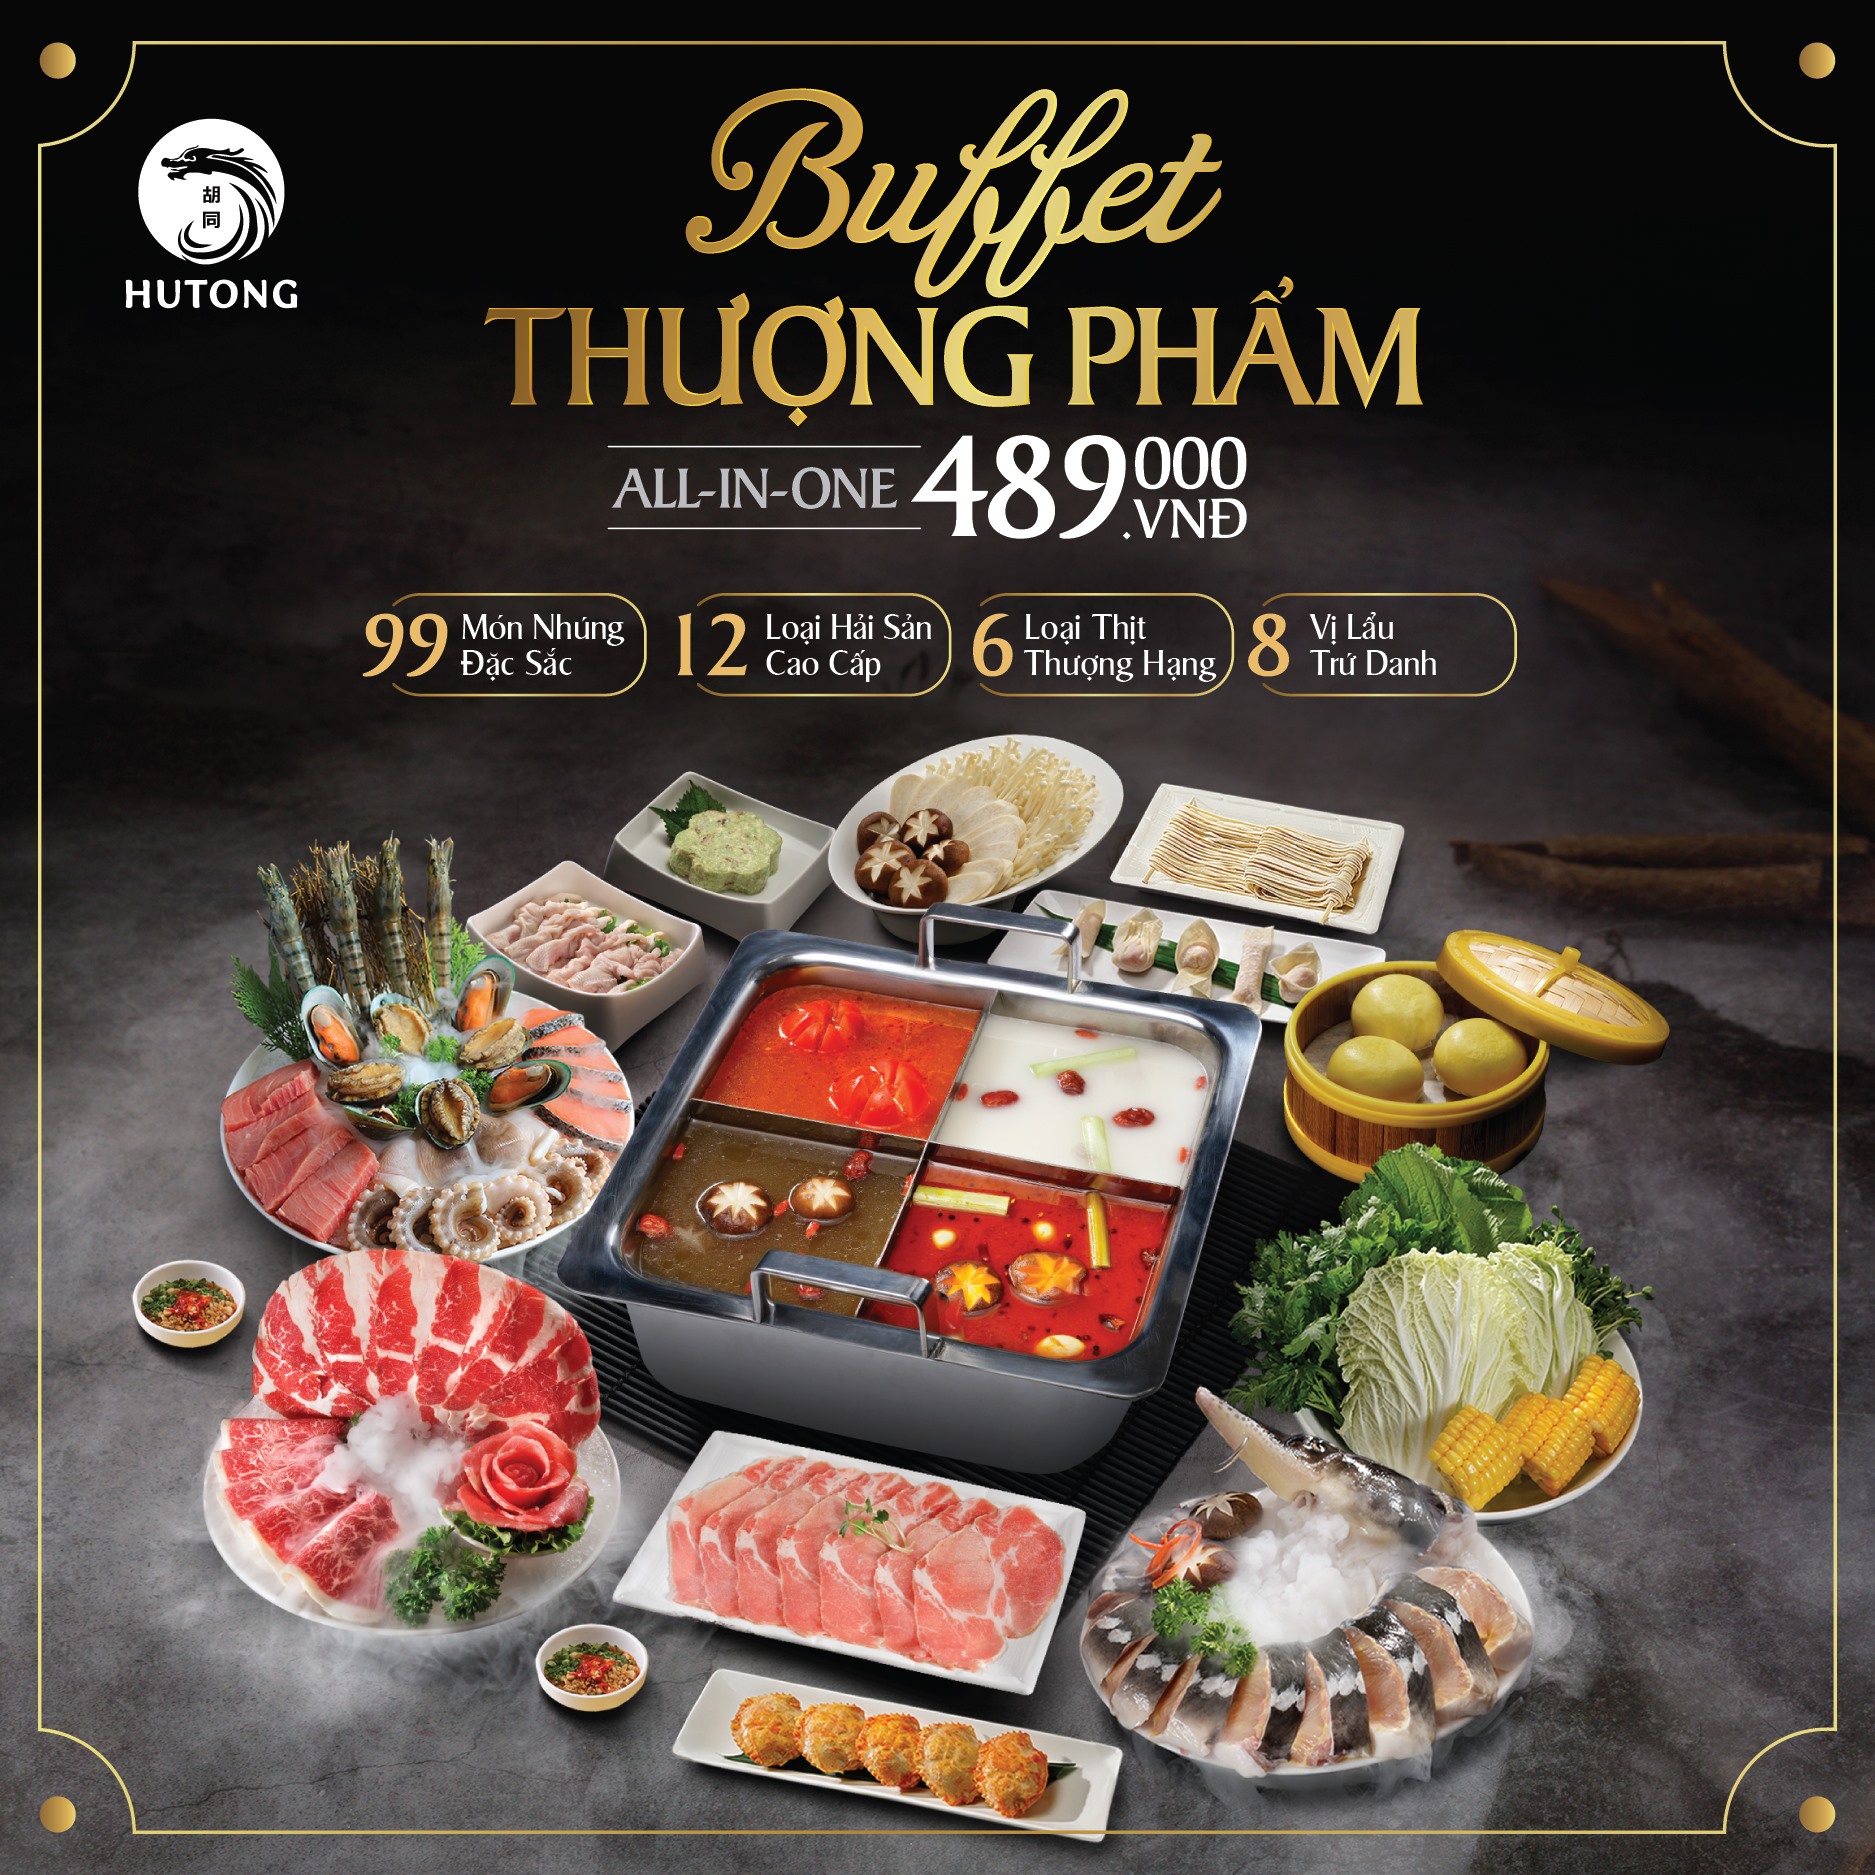 hutong buffet hcm